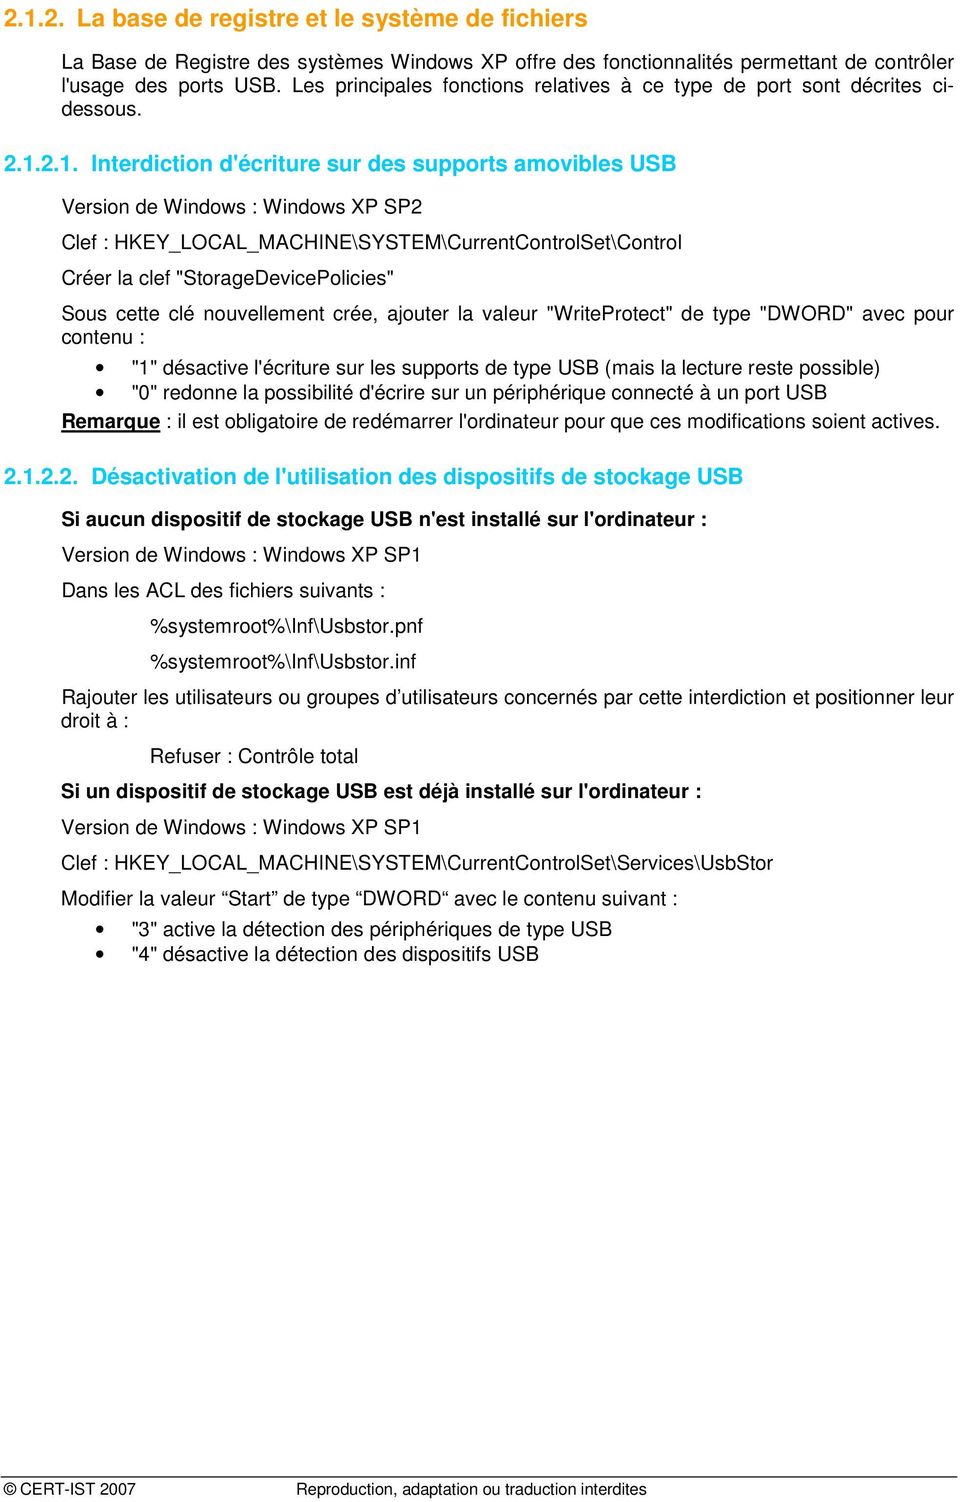 2.1. Interdiction d'écriture sur des supports amovibles USB Version de Windows : Windows XP SP2 Clef : HKEY_LOCAL_MACHINE\SYSTEM\CurrentControlSet\Control Créer la clef "StorageDevicePolicies" Sous